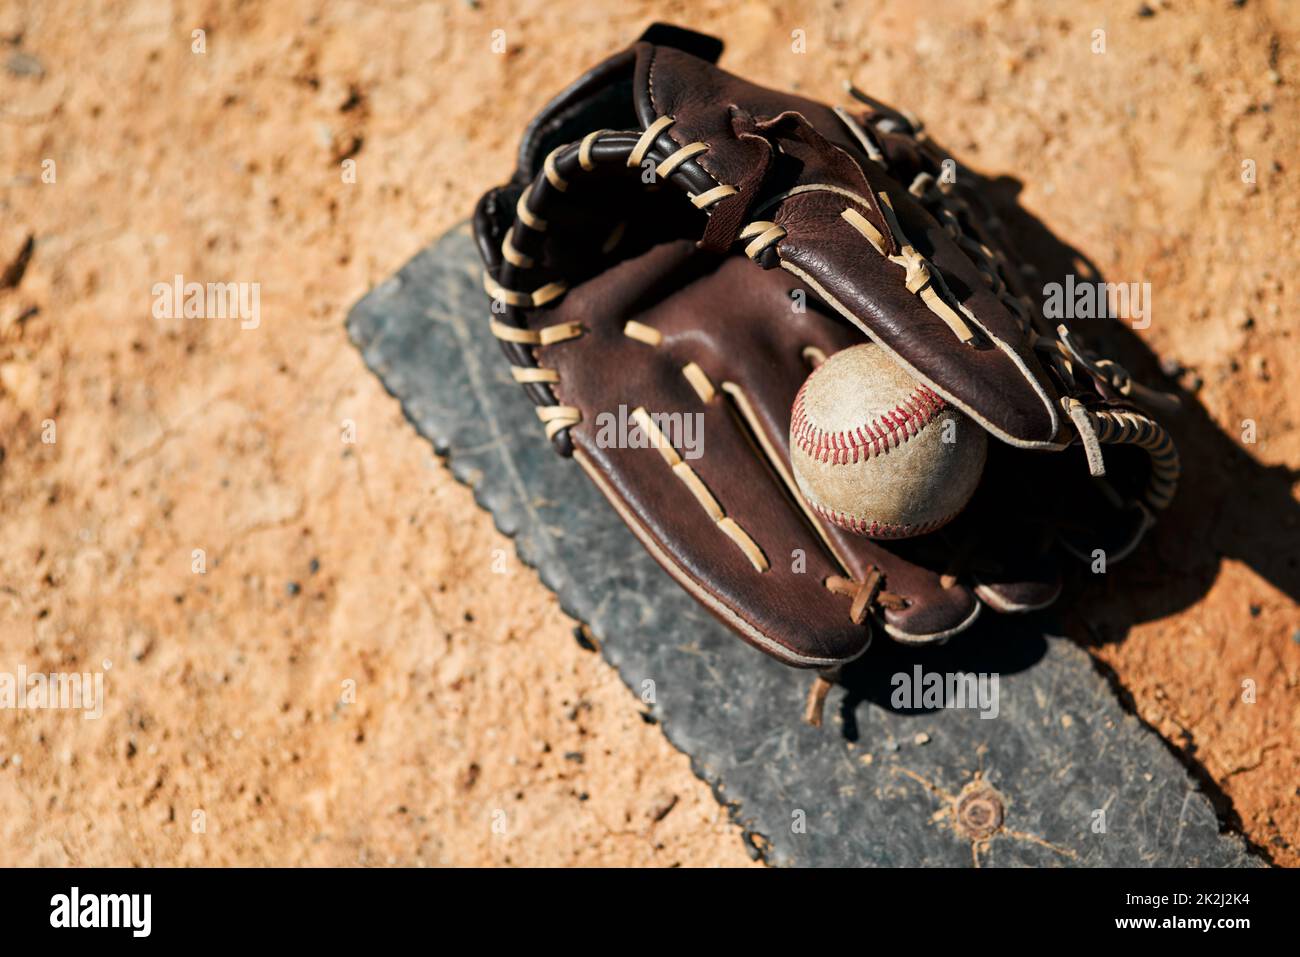 Seine Baseballsaison. Aufnahme eines Baseballhands und eines Balls, der tagsüber auf dem Spielfeld liegt. Stockfoto